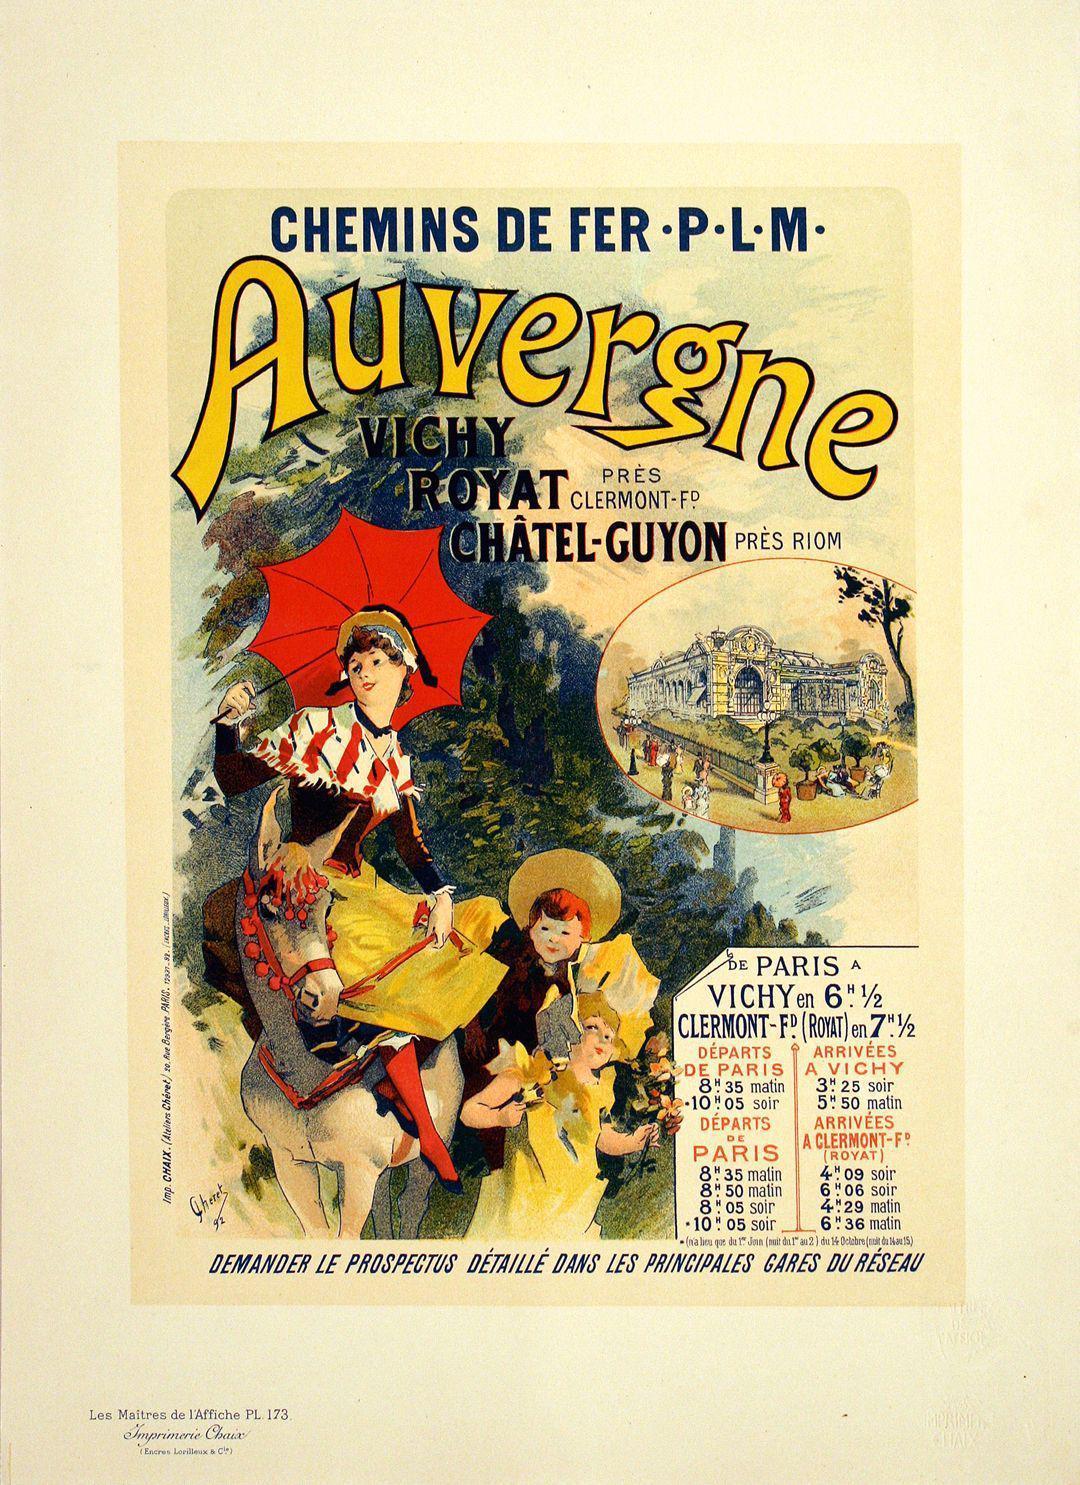 Original Maitres de L'Affiche - PL 173 by Jules Cheret 1899 - Auvergne PLM